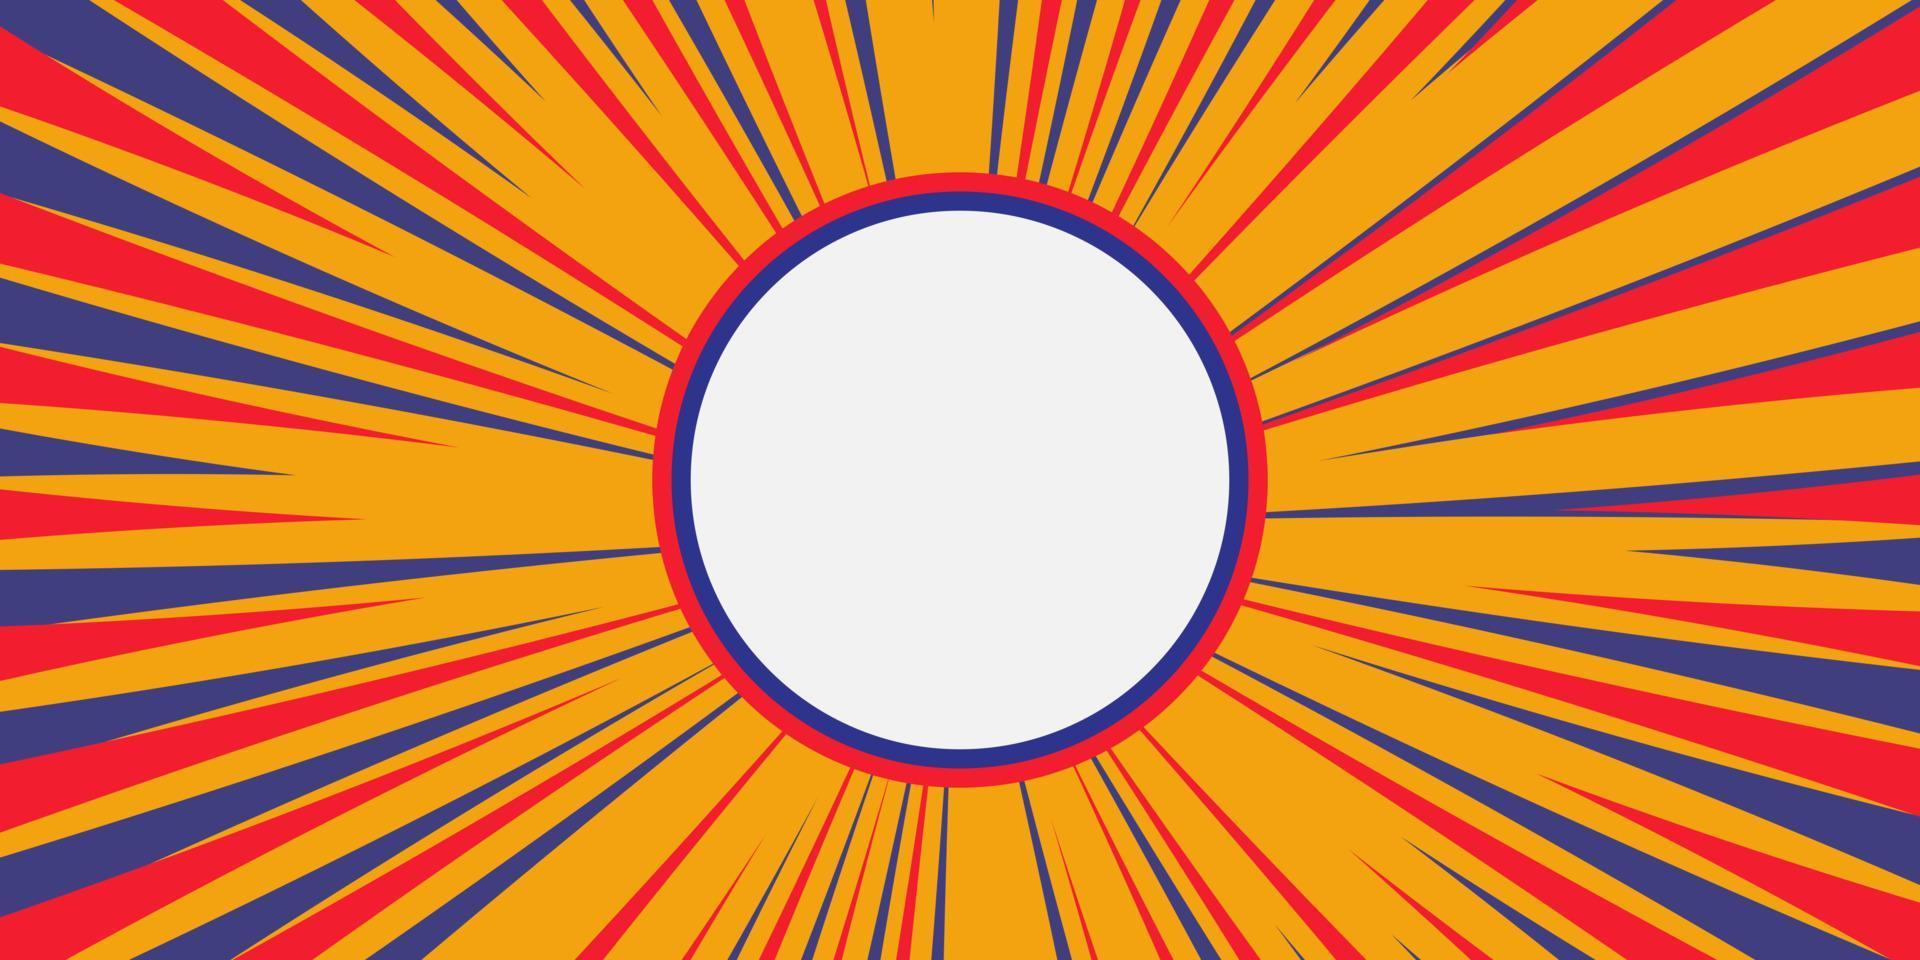 Fondo de vector abstracto rojo y azul con rayos. ilustración vectorial grunge retro con un fondo de círculo blanco. diseño abstracto de rayos de sol.sol naciente colorido vintage o rayo de sol, explosión de sol retro